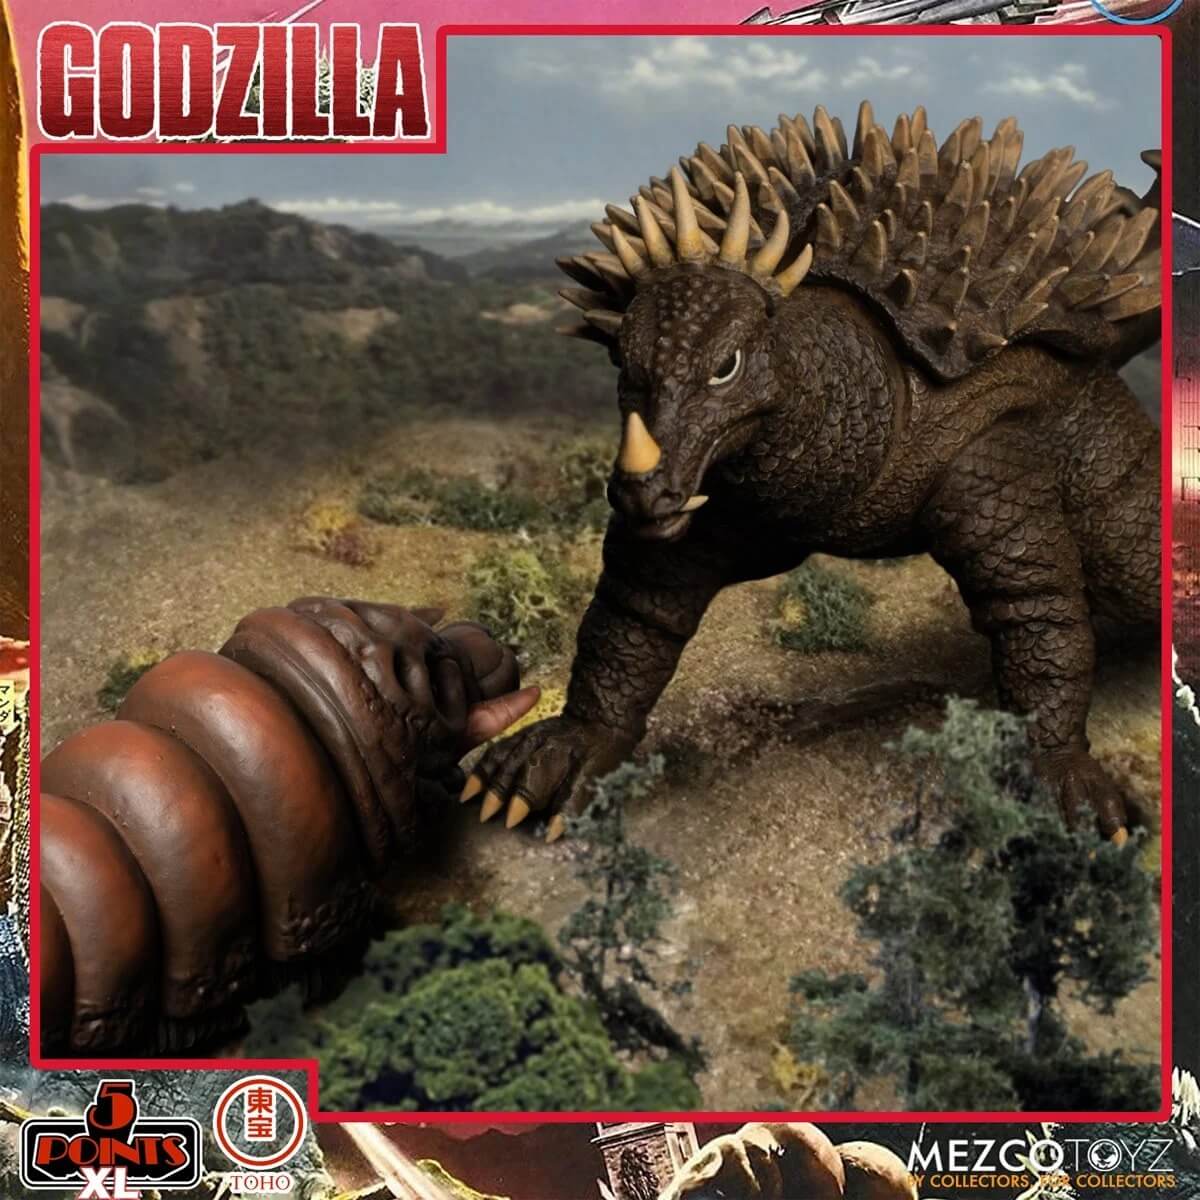 Mezco Toyz Godzilla: Destroy All Monsters (1968) Boxed Set